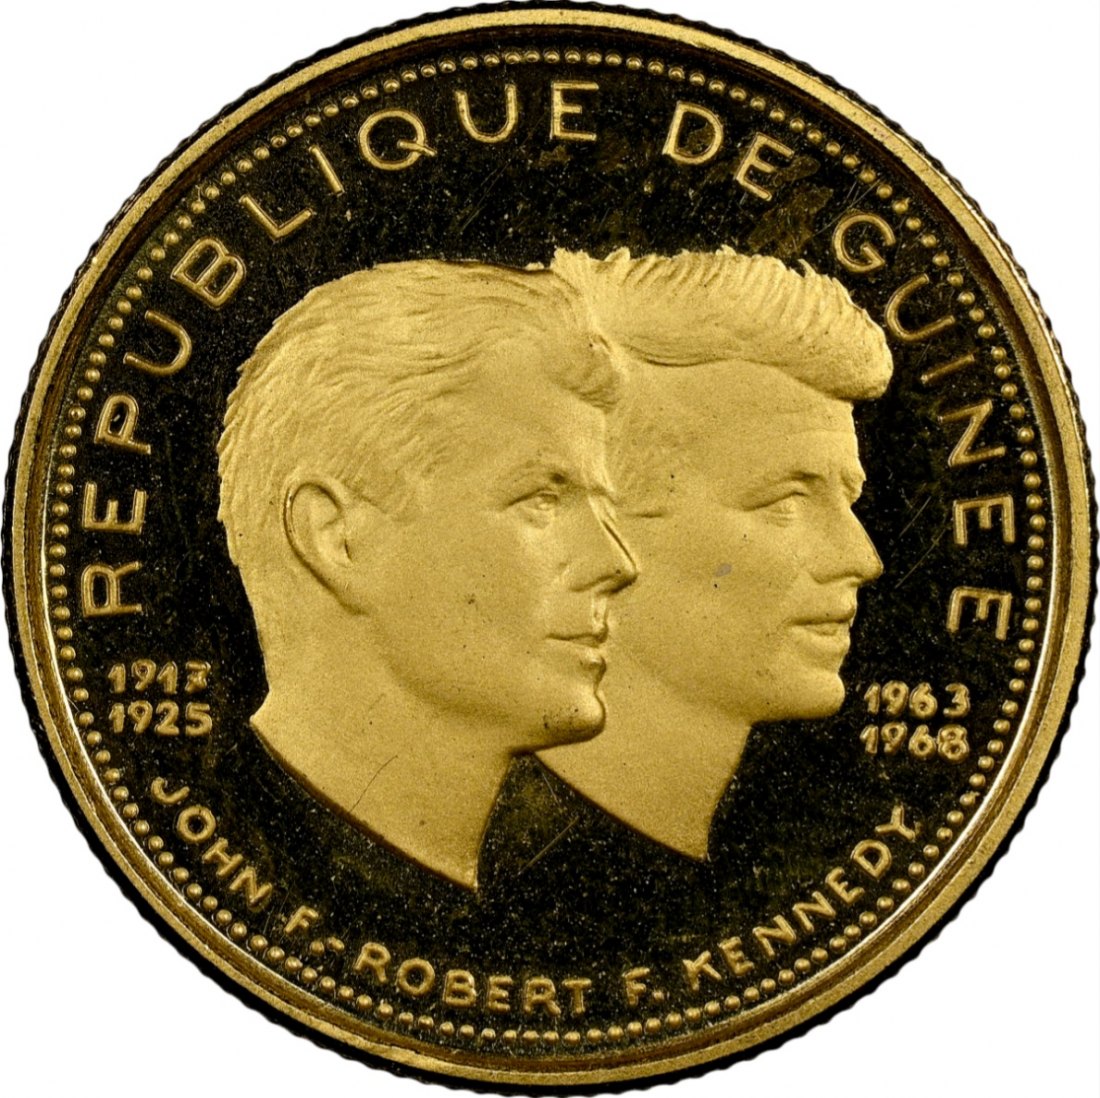  Guinea 1.000 Francs Guinéens 1969 | NGC PF68 ULTRA CAMEO | John and Robert Kennedy V2   